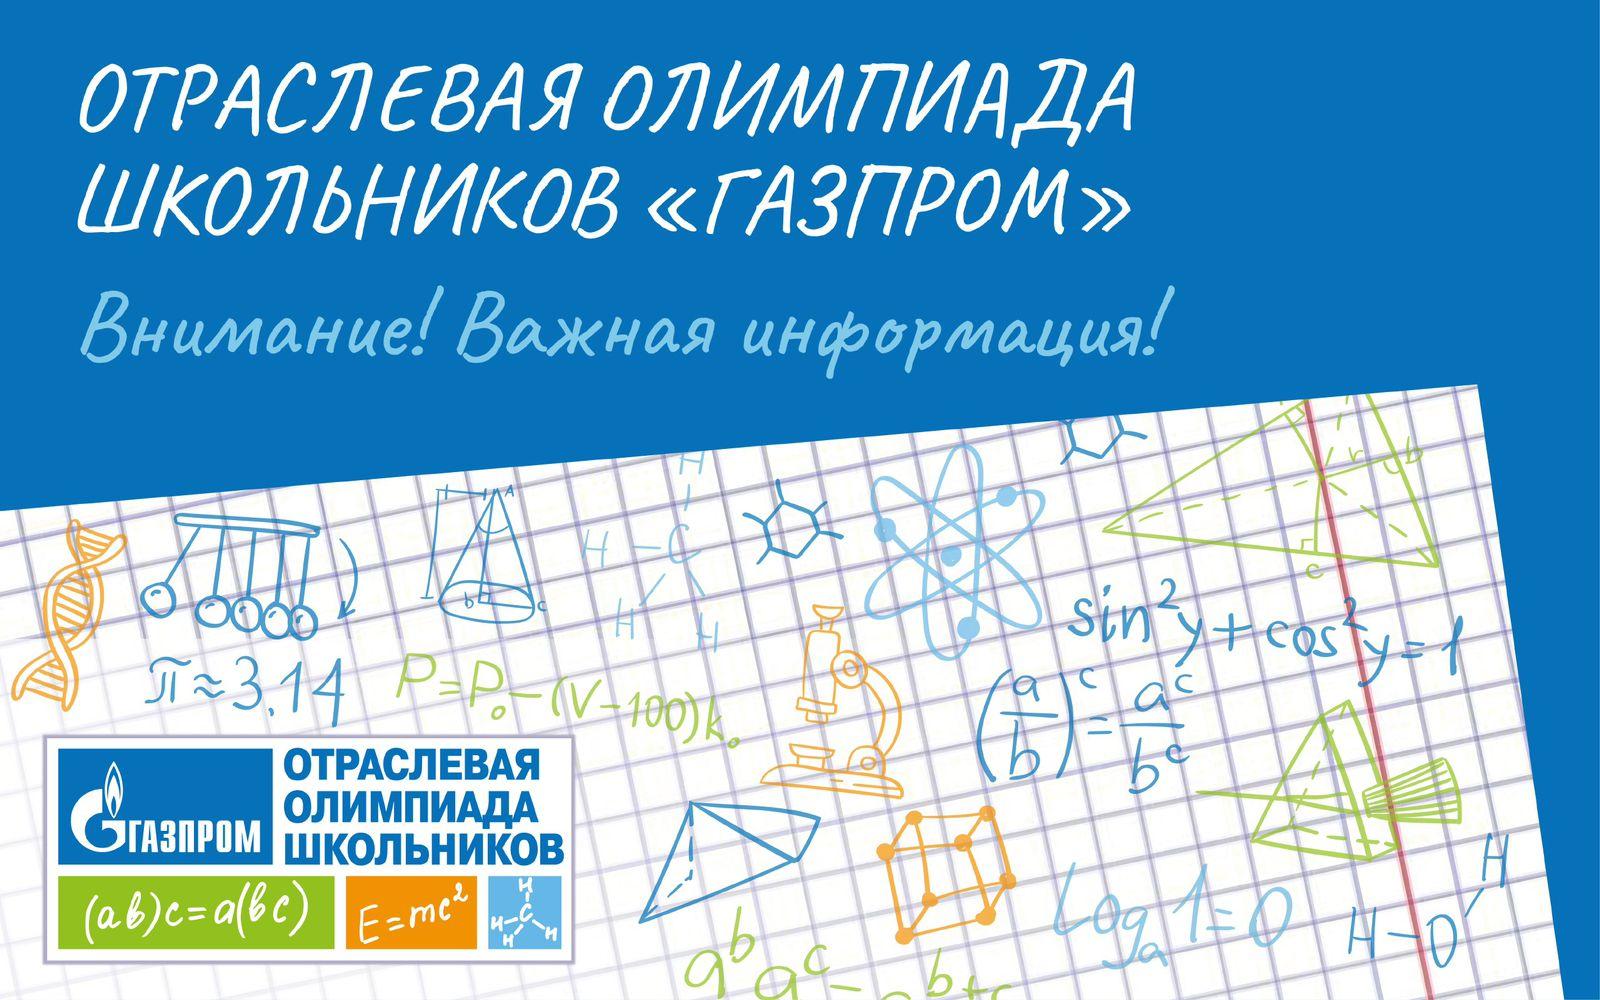 Отборочный тур олимпиады школьников «Газпром» открыт до 15 января 2023 года